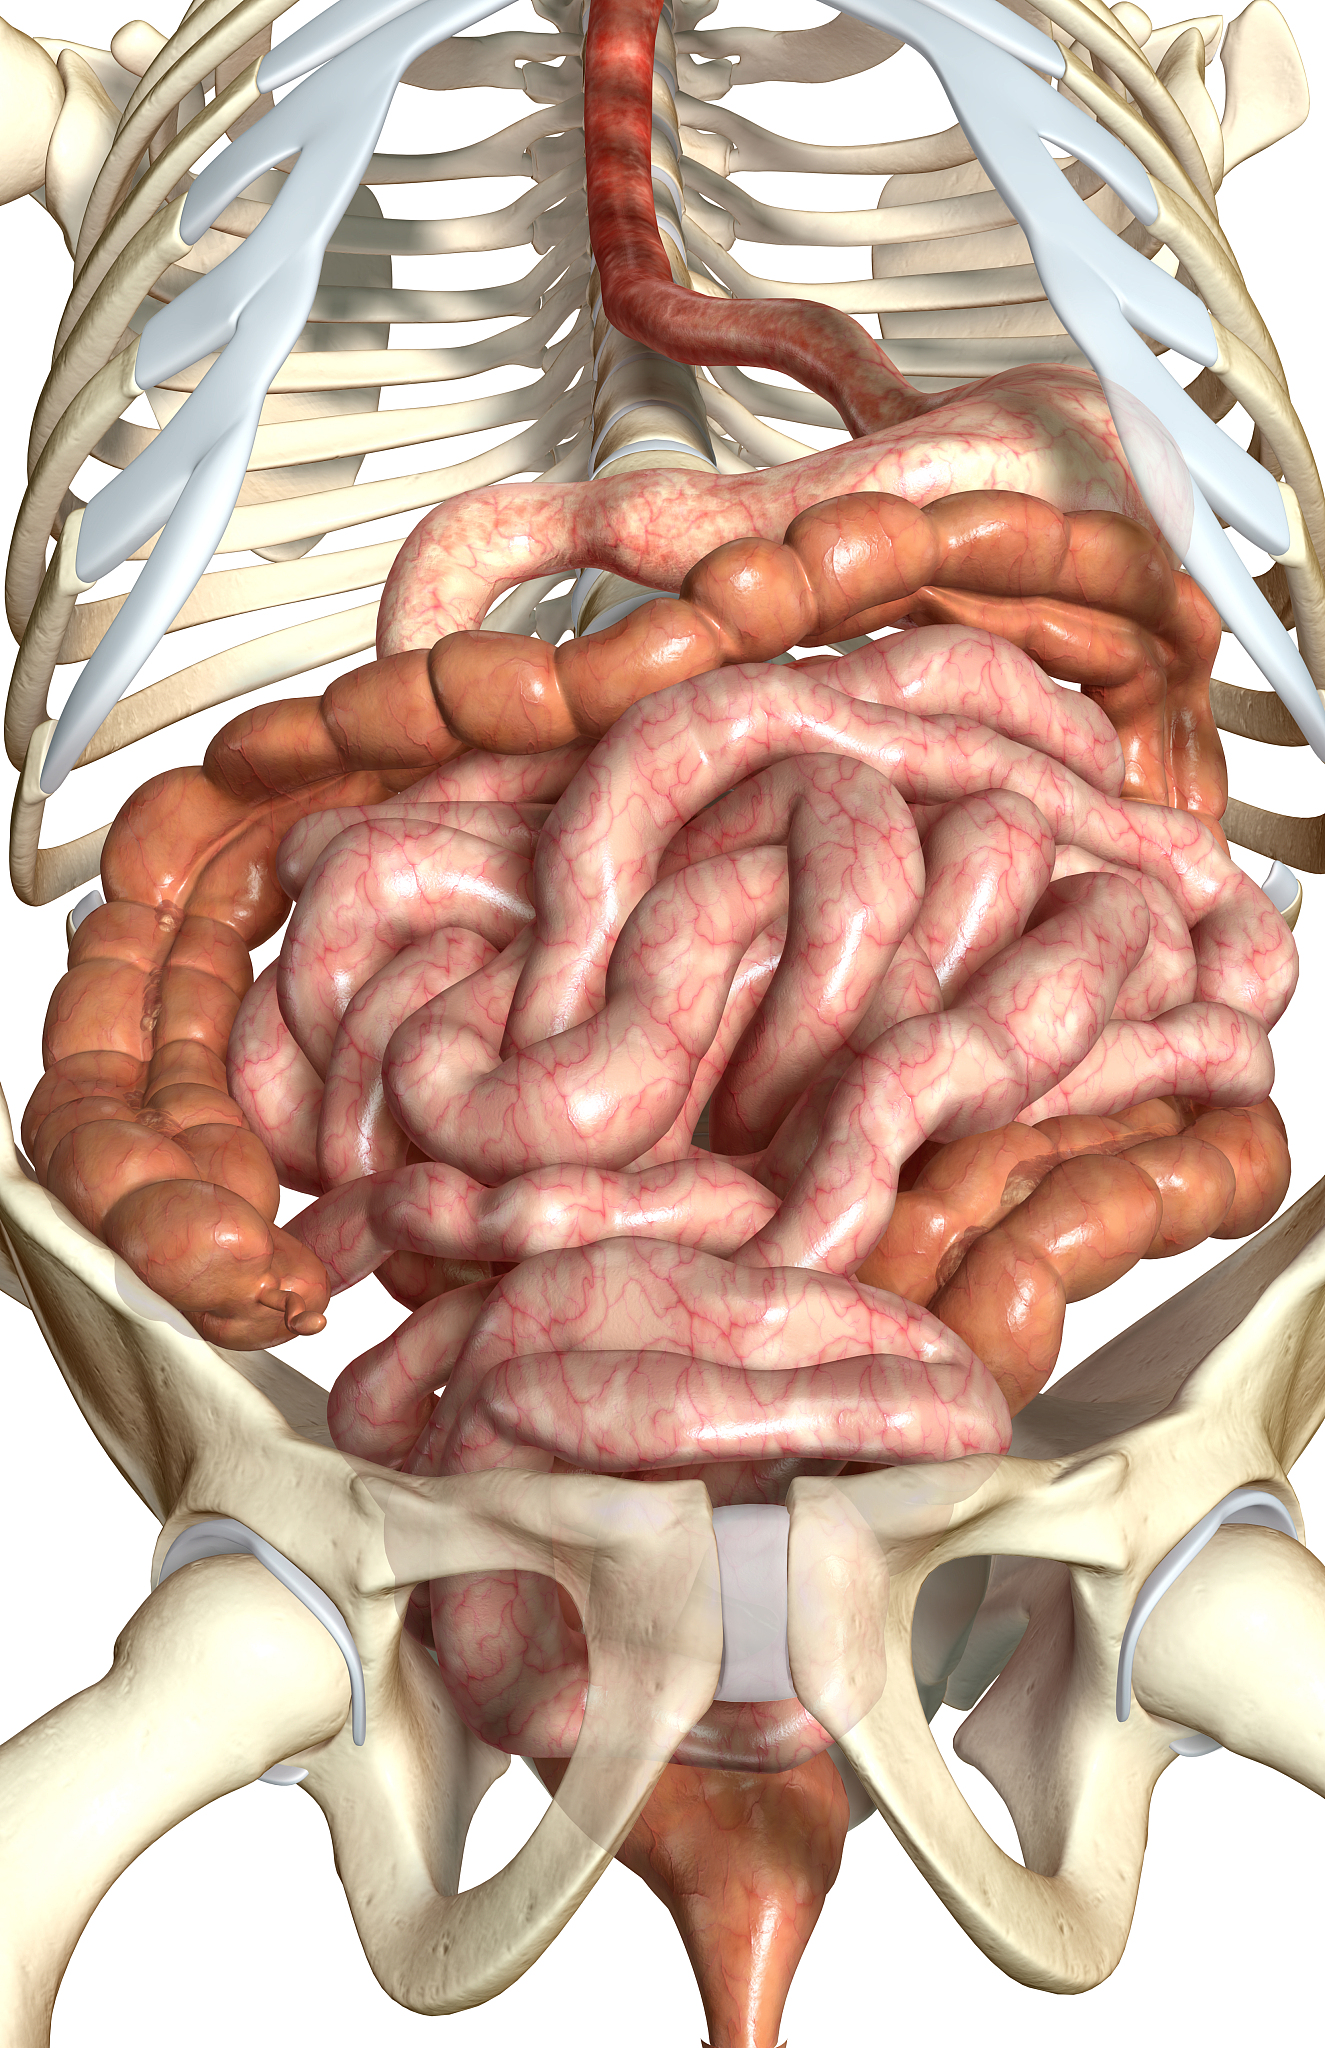 肠道一个被人类低估了的超级器官